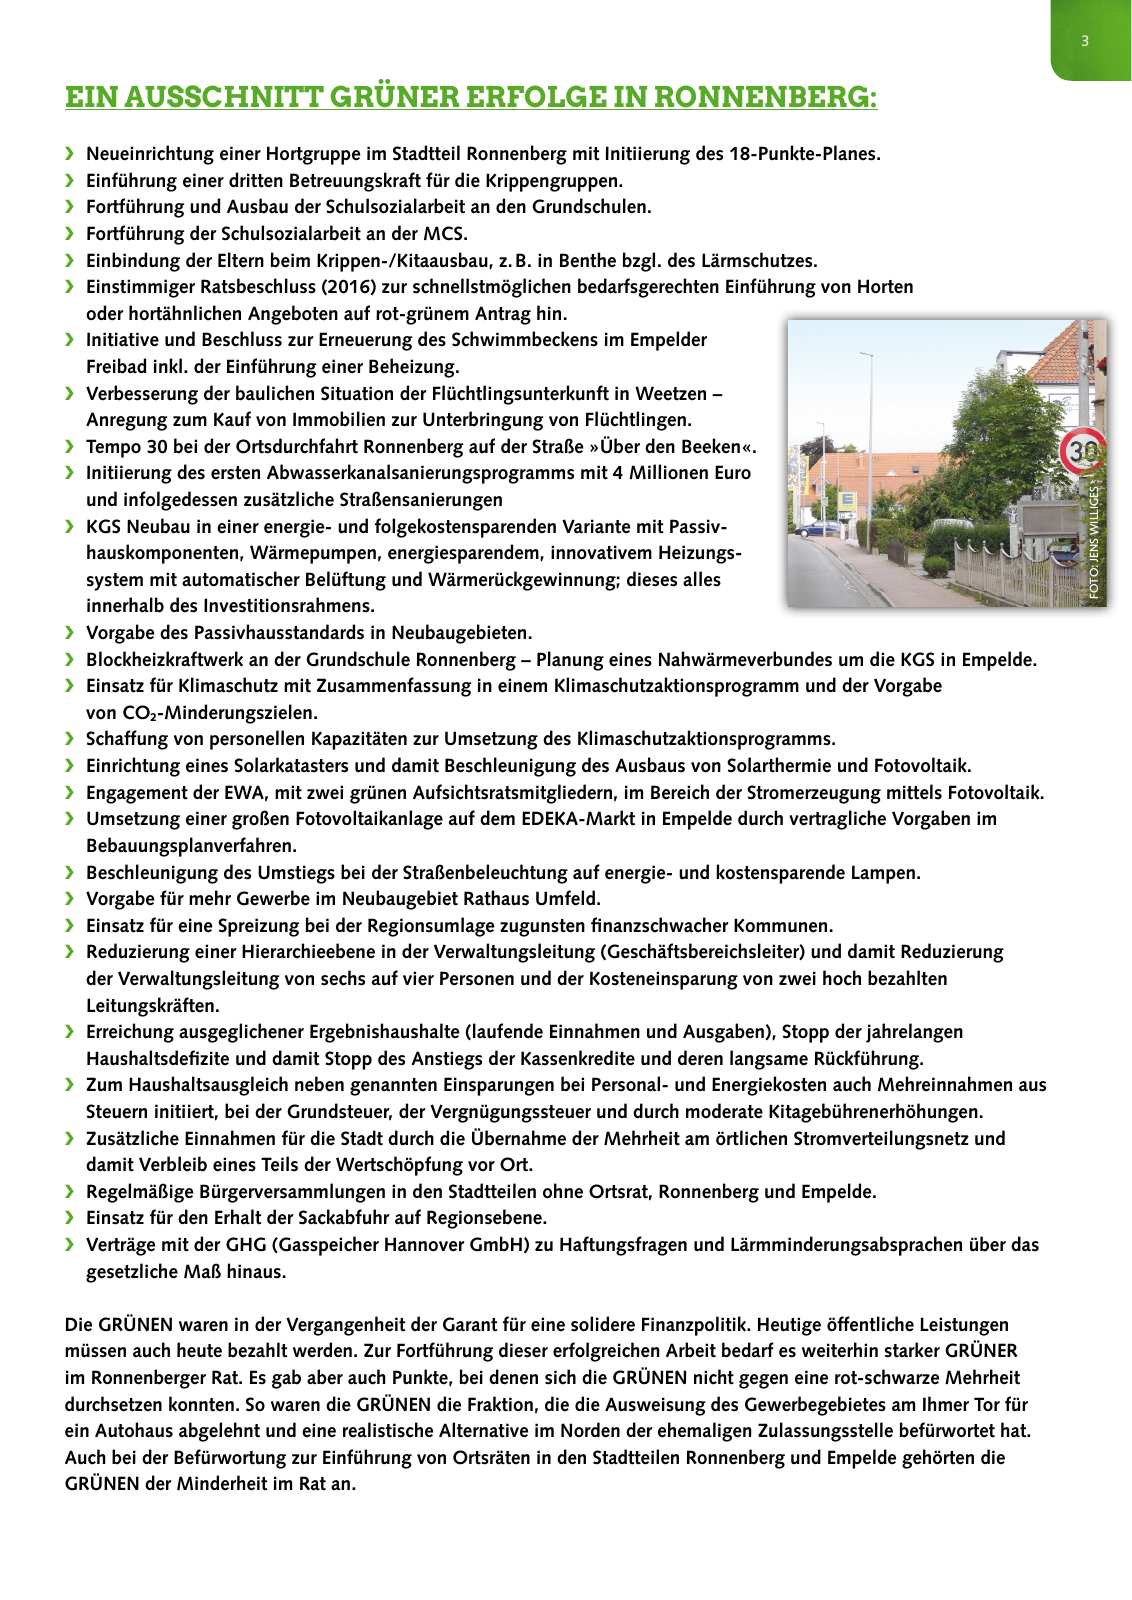 Vorschau Grüne Ronnenberg: Wahlprogramm 2016 Seite 3